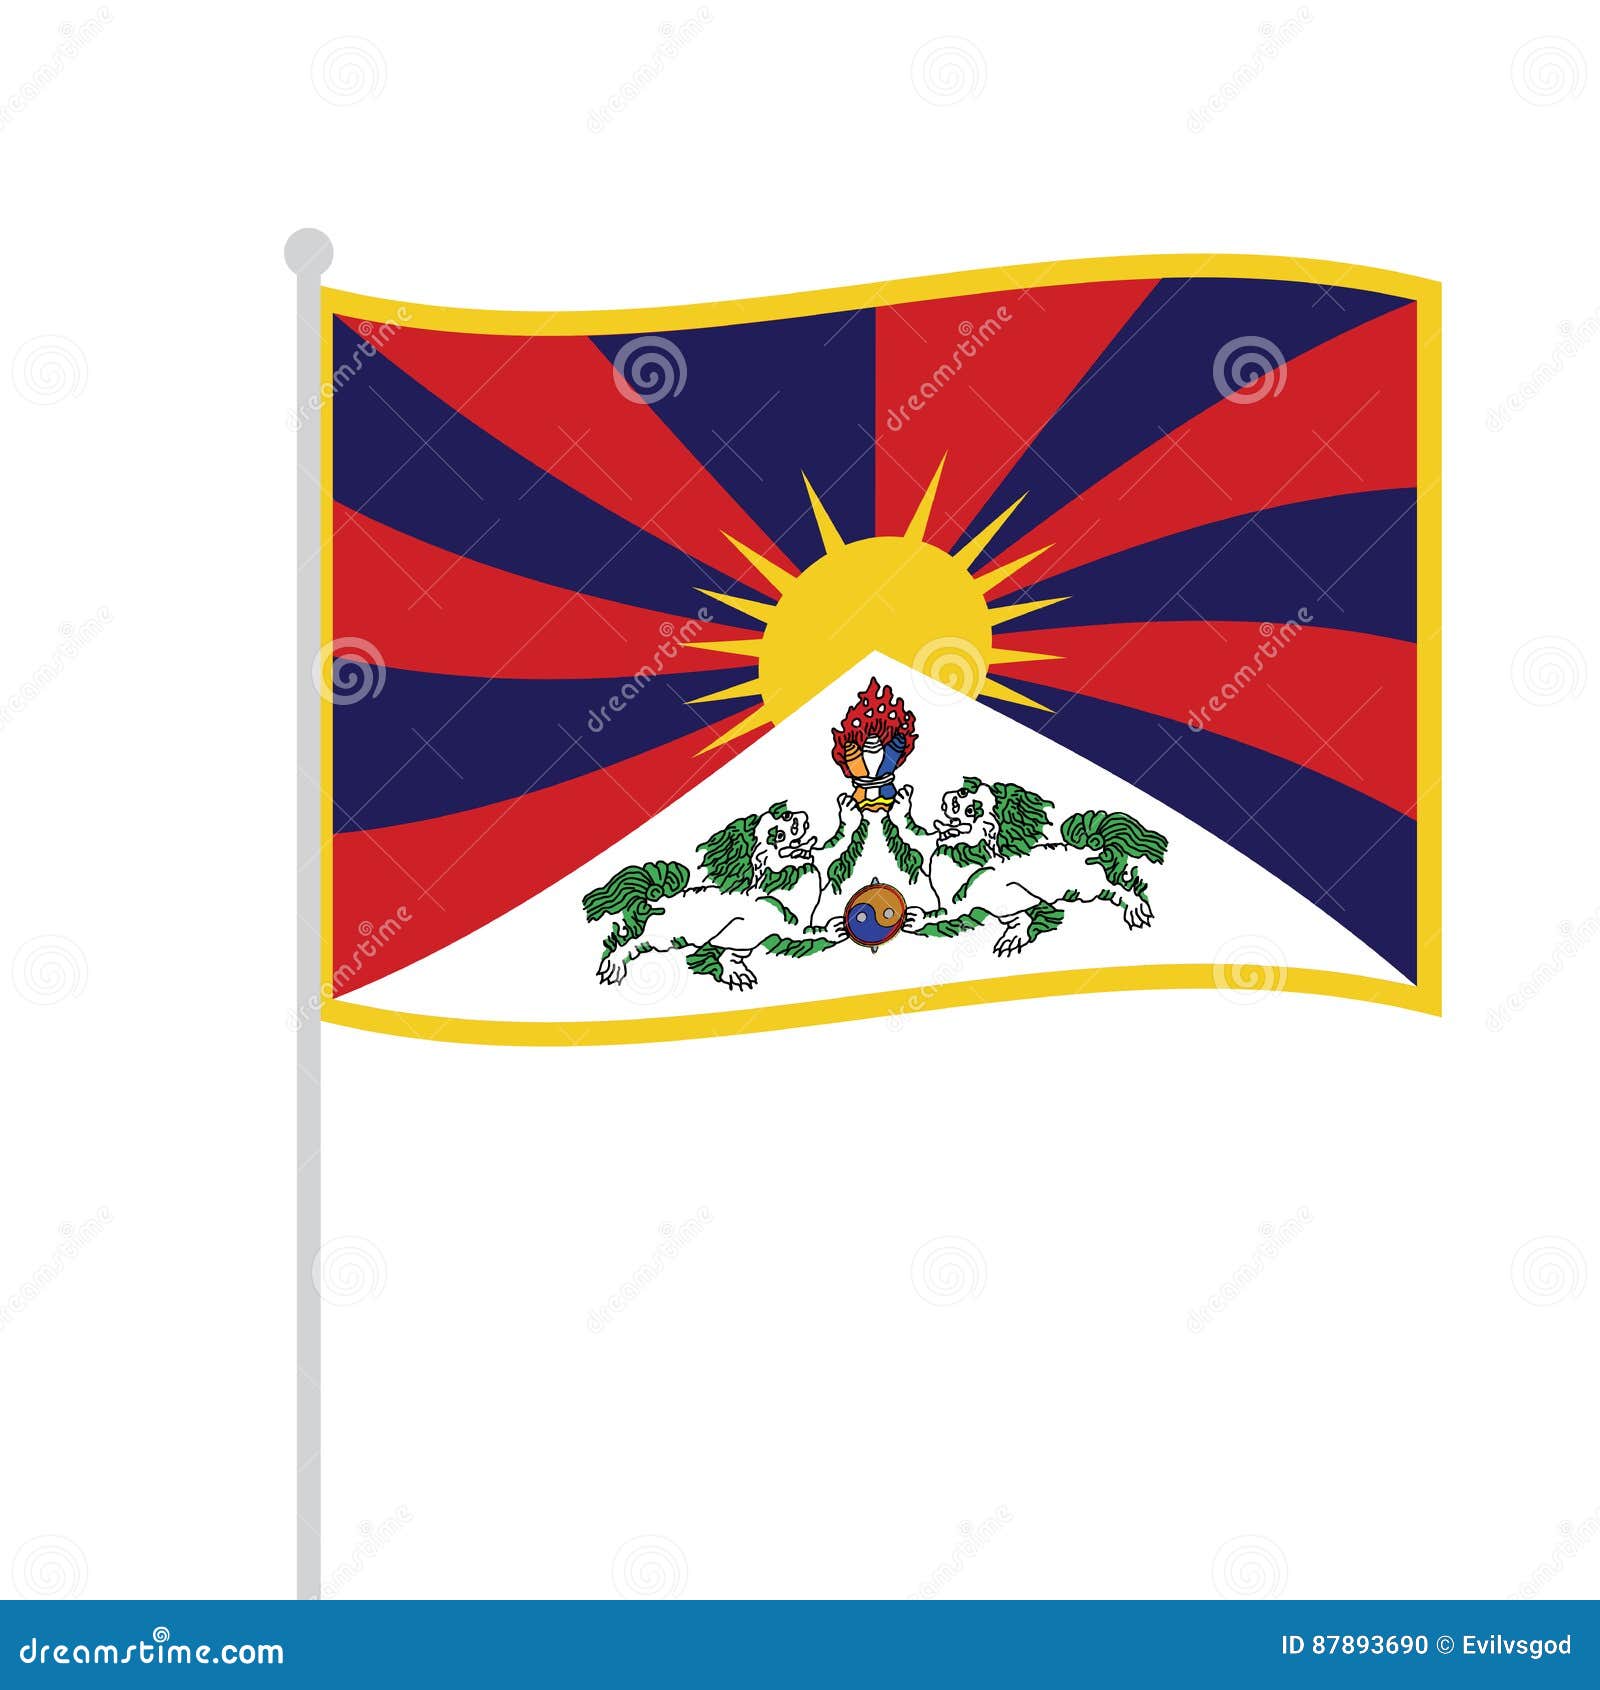 藏族 - 素材資源庫